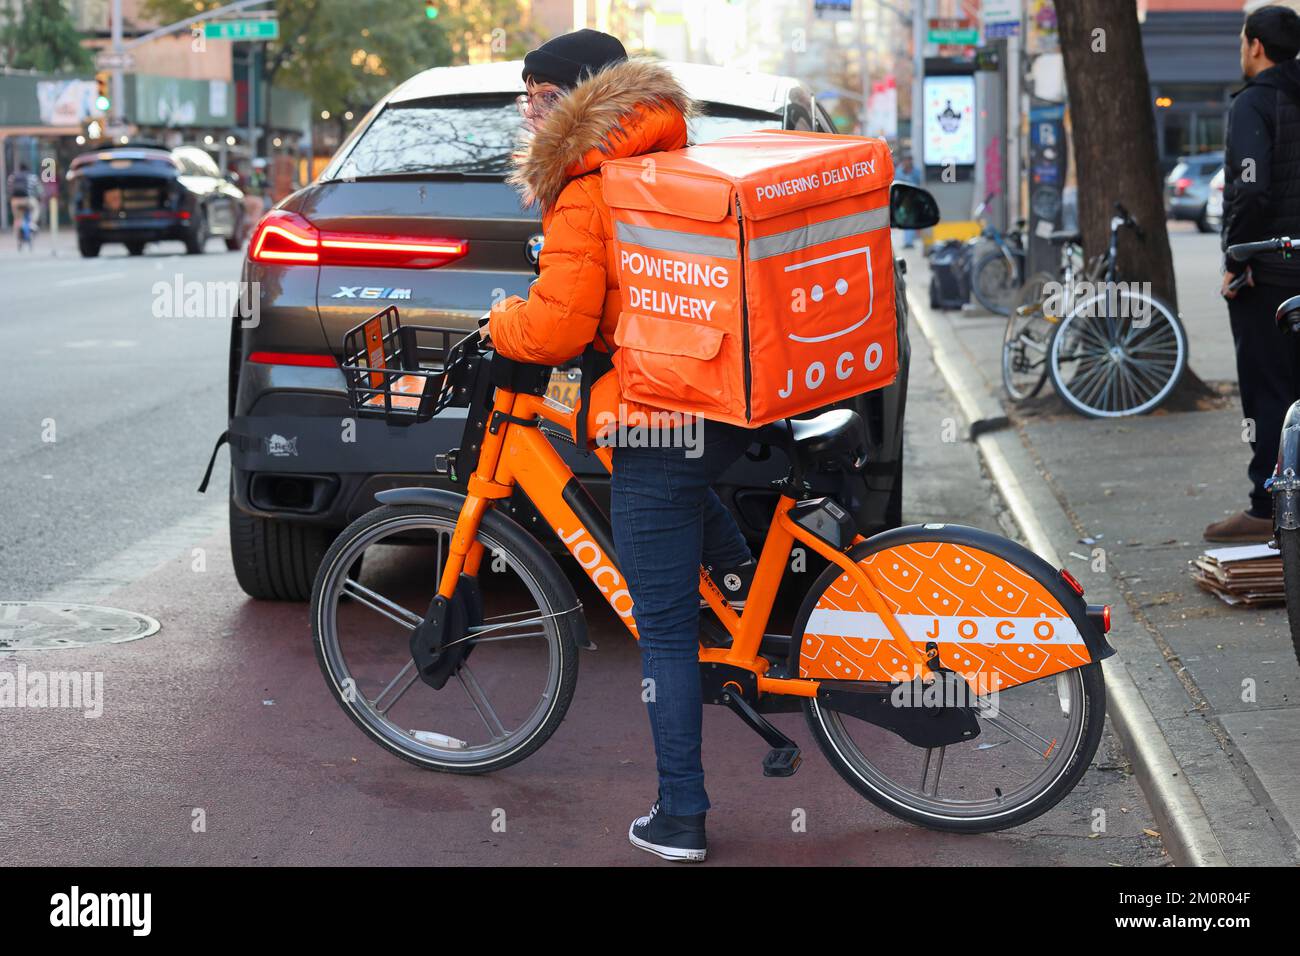 Una persona che consegna cibo su una bici elettrica JOCO a Manhattan. un lavoratore di concerto su una e-bike a noleggio Foto Stock